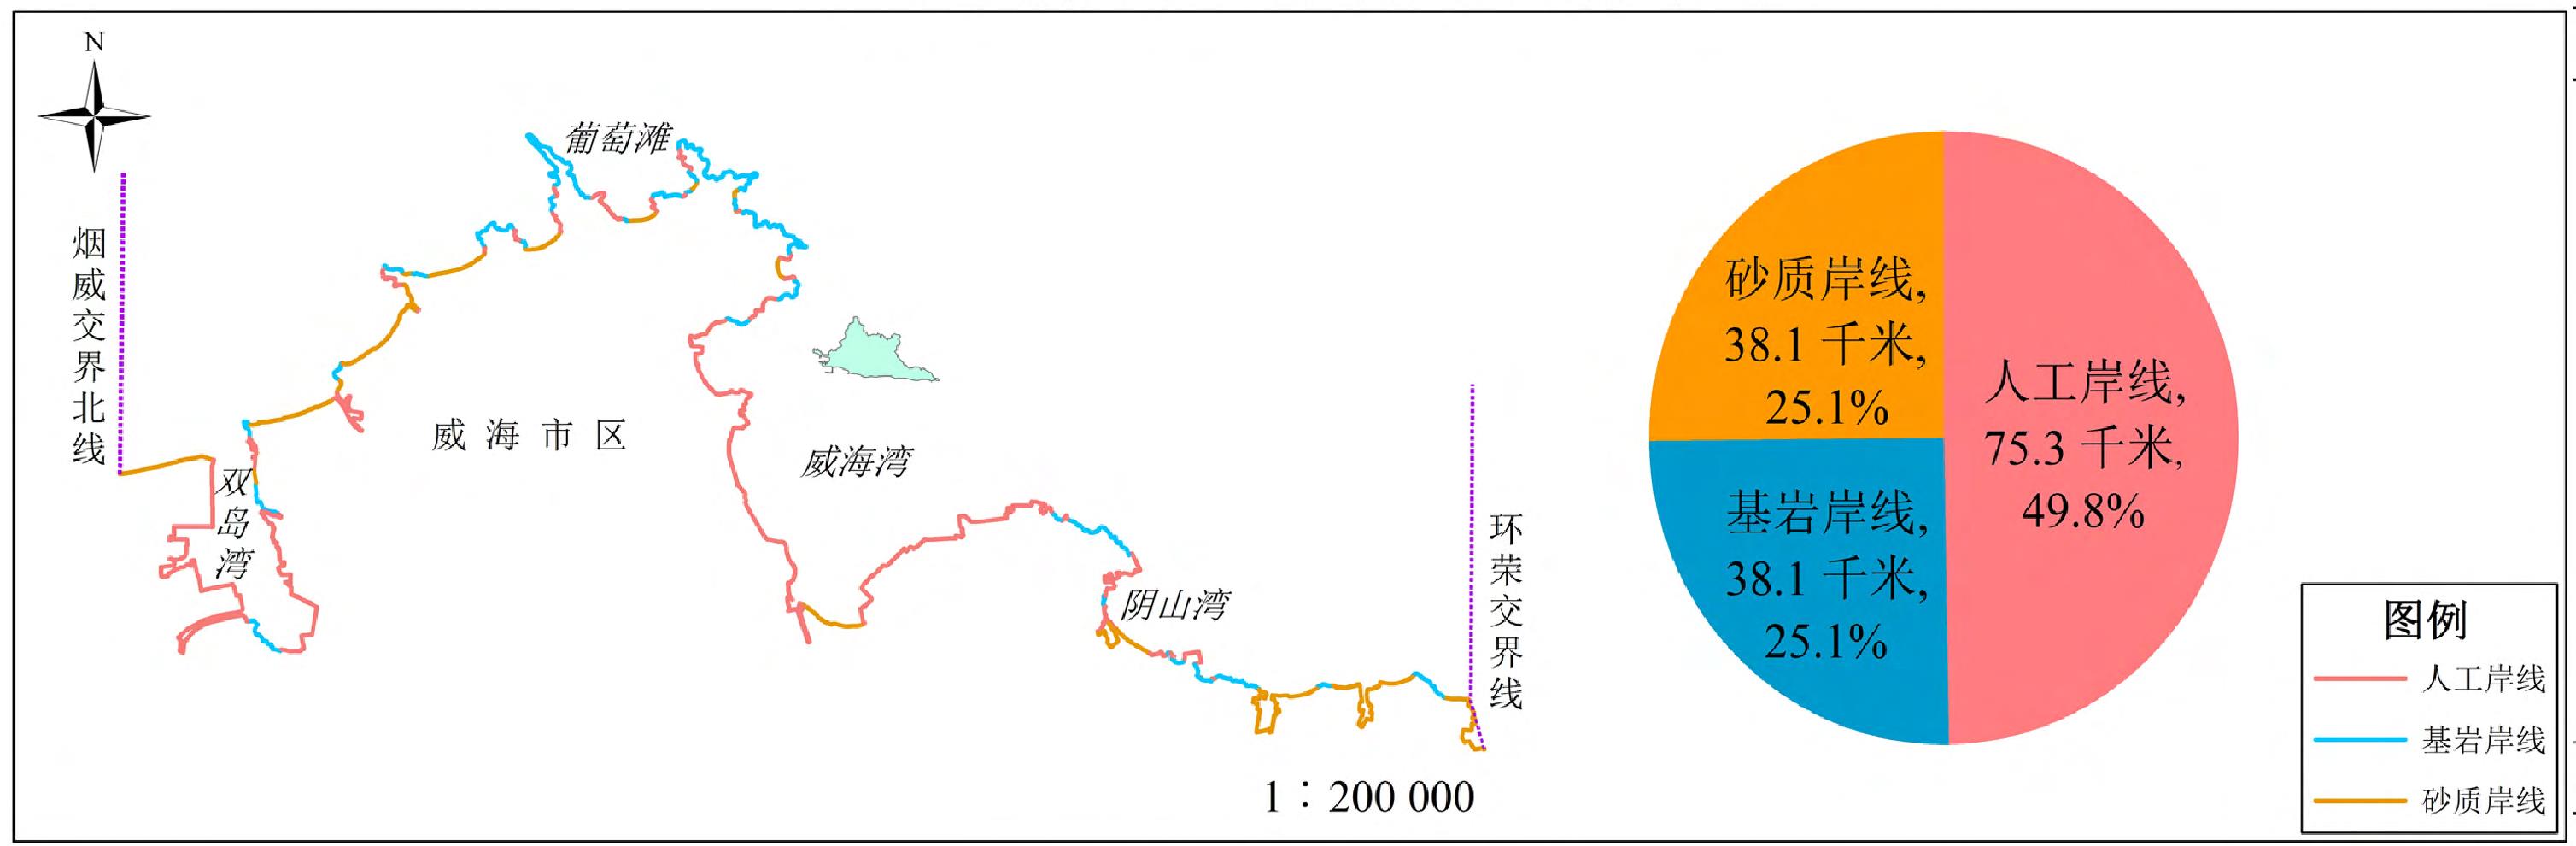 2014年威海市区海岸线类型分布图